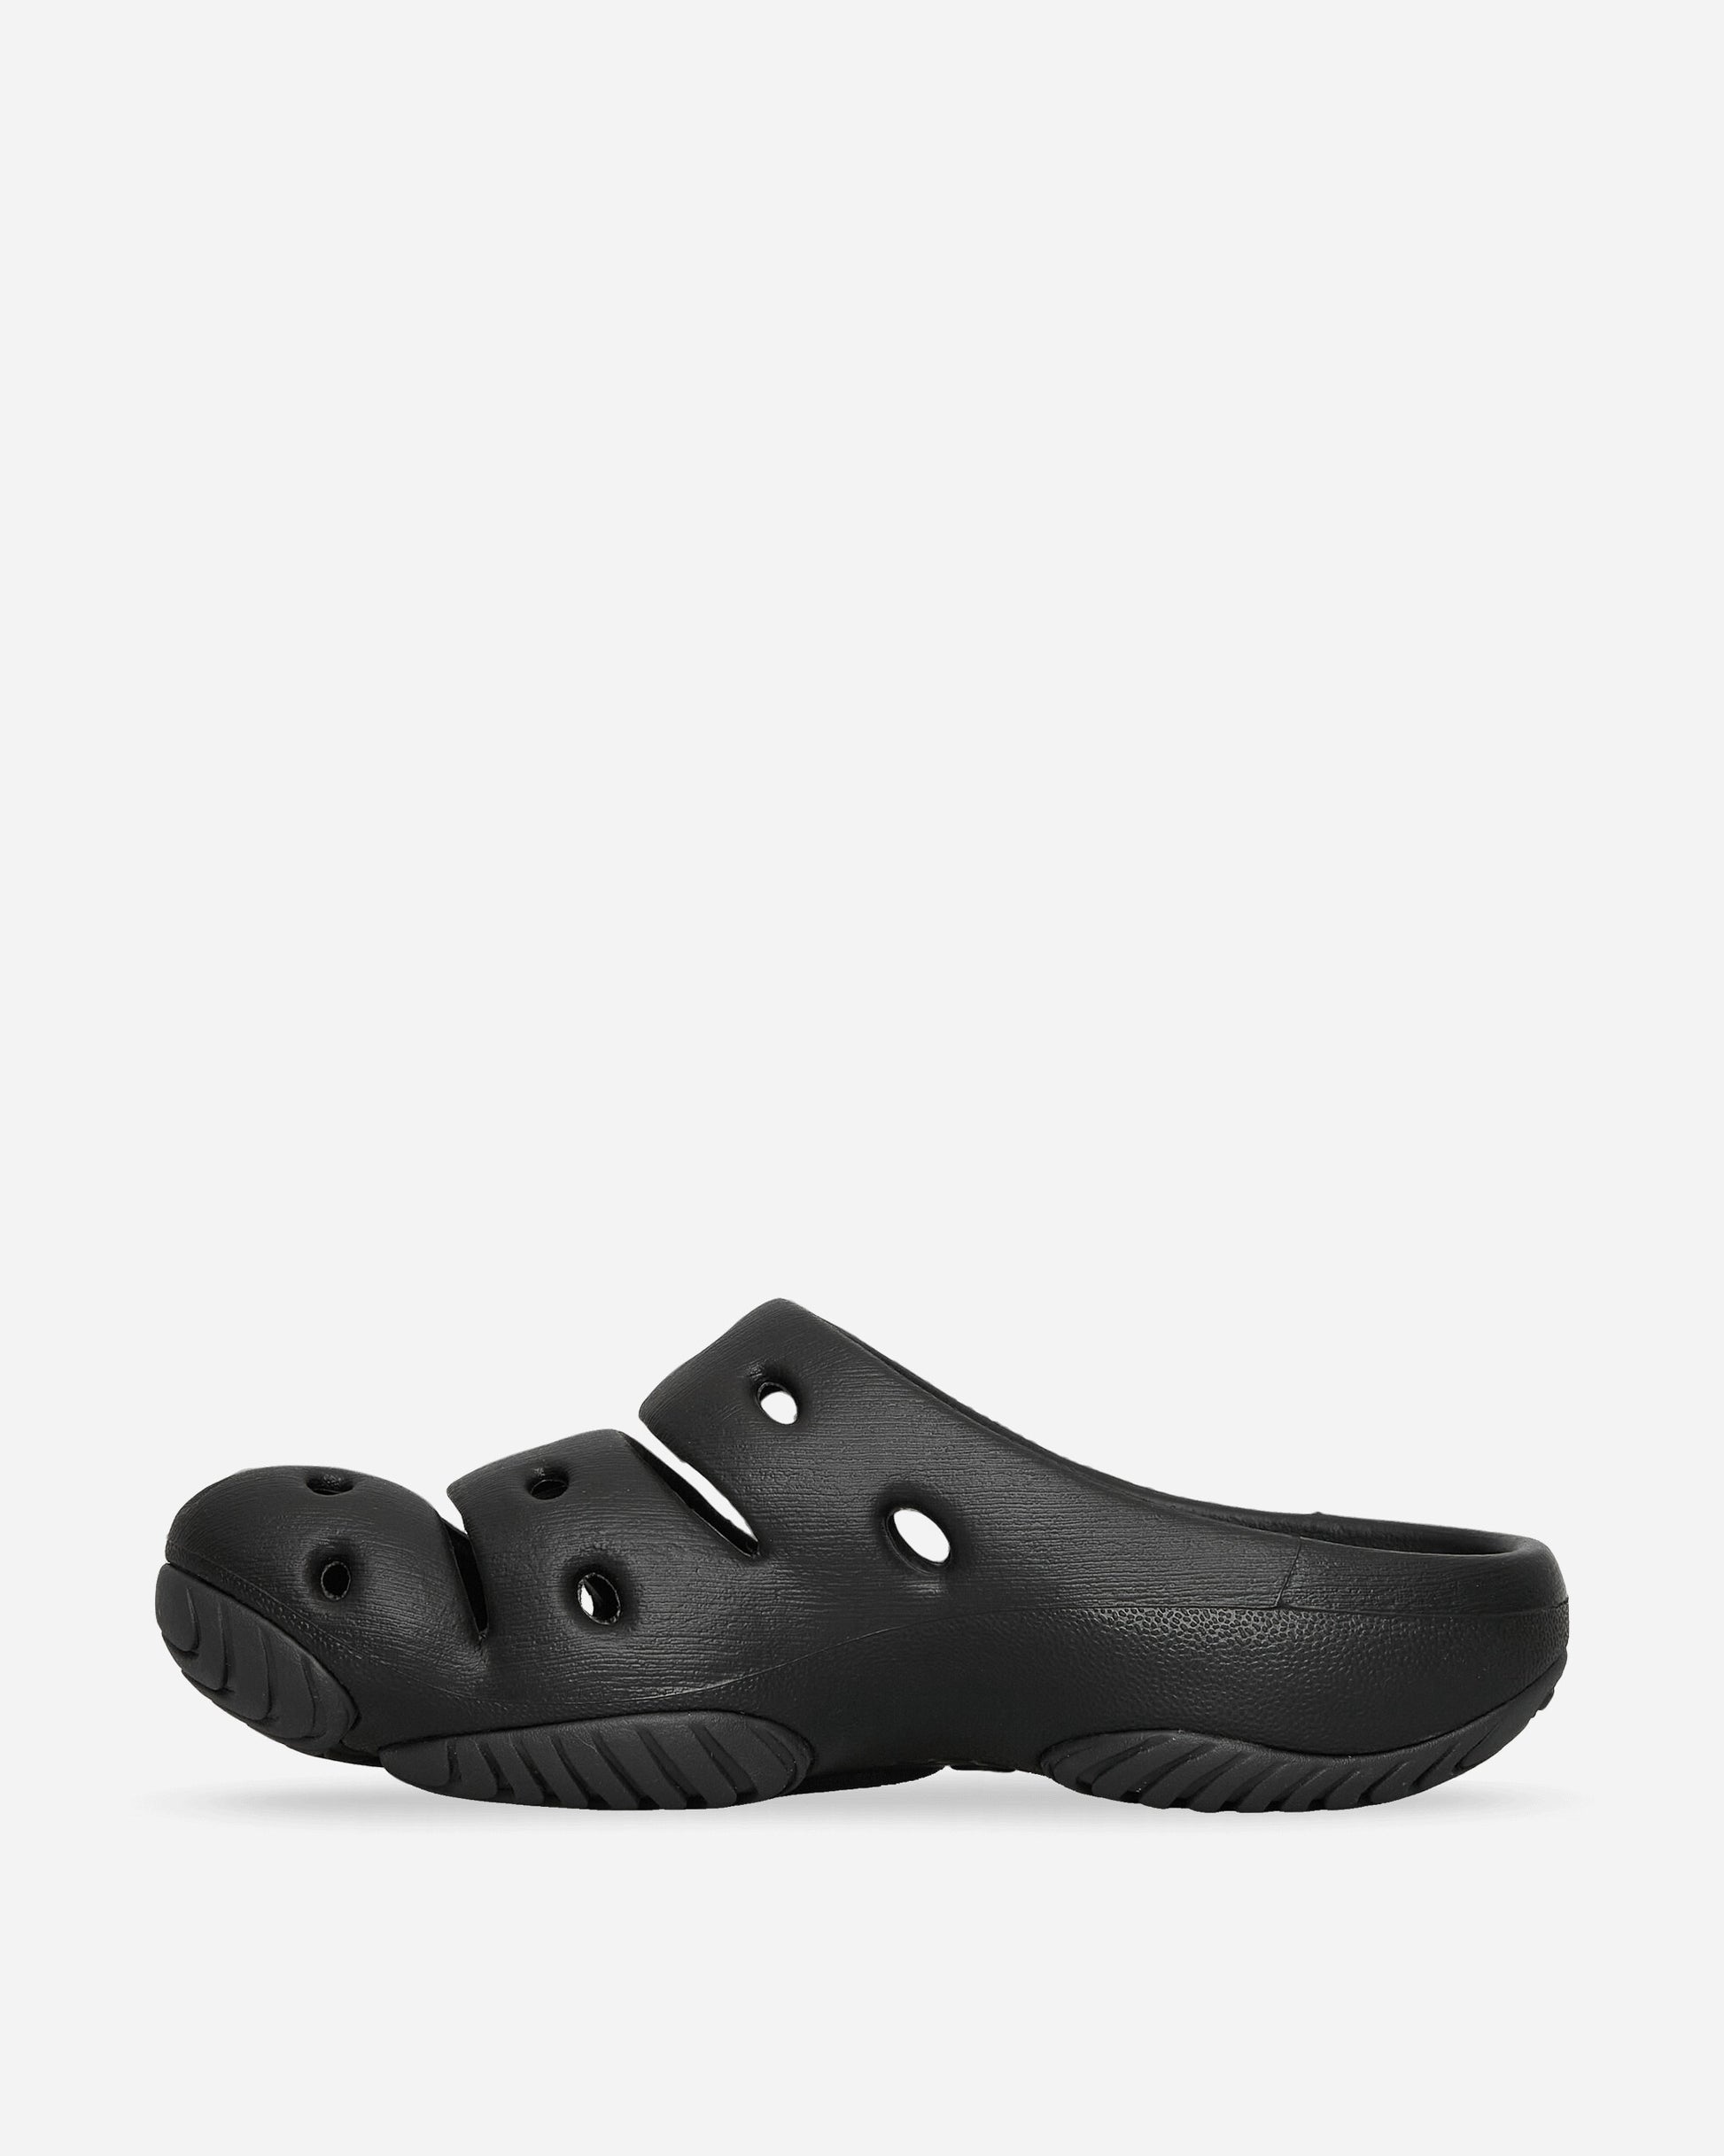 Keen Wmns Yogui Black/Magnet Sandals and Slides Slides 1028812 001